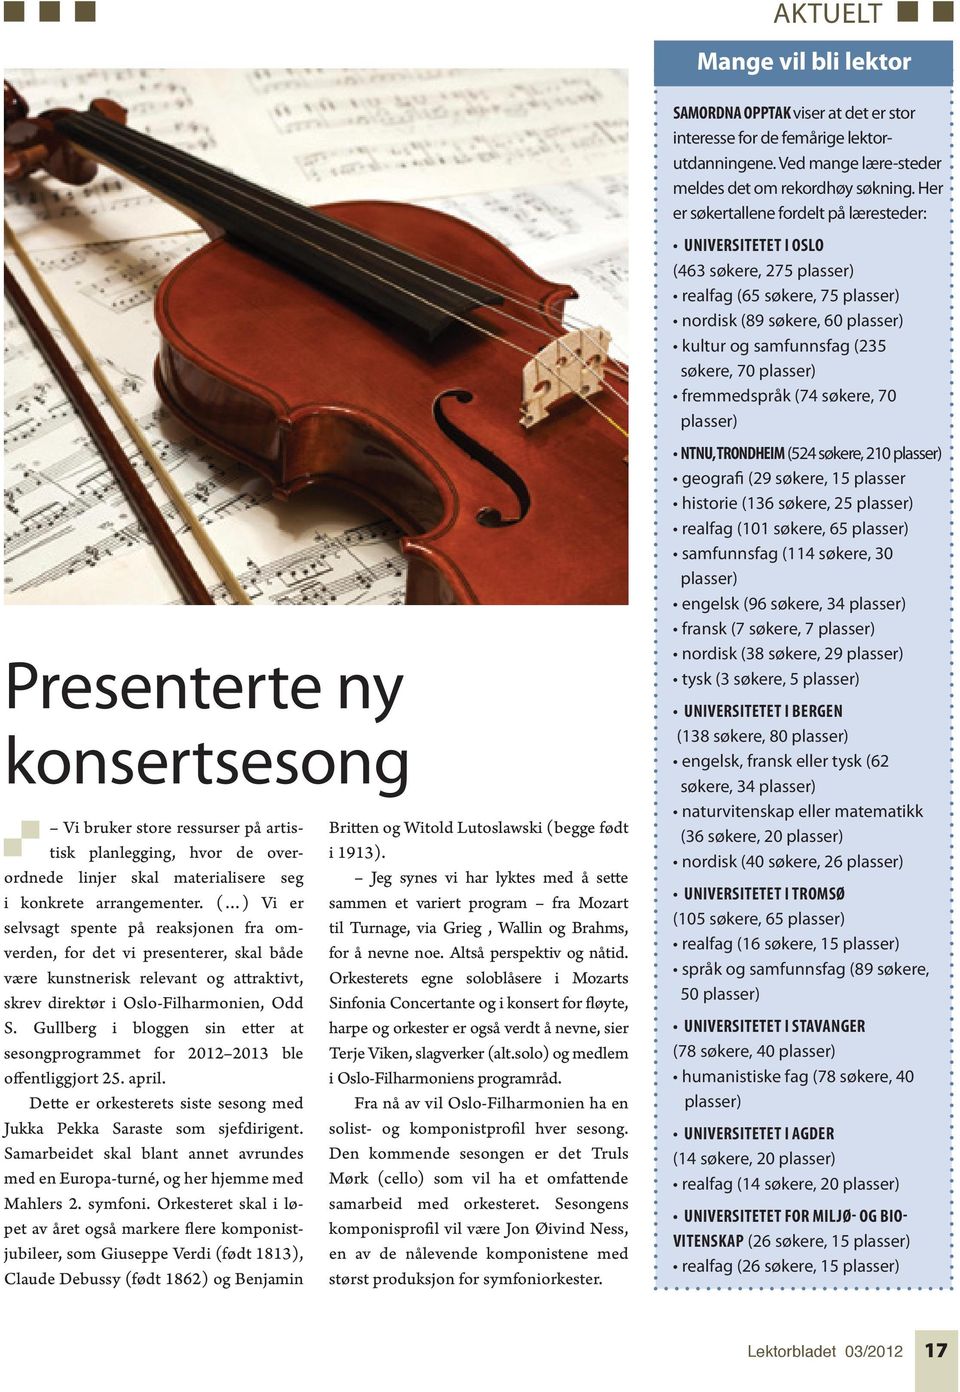 Gullberg i bloggen sin etter at sesongprogrammet for 2012 2013 ble offentliggjort 25. april. Dette er orkesterets siste sesong med Jukka Pekka Saraste som sjefdirigent.